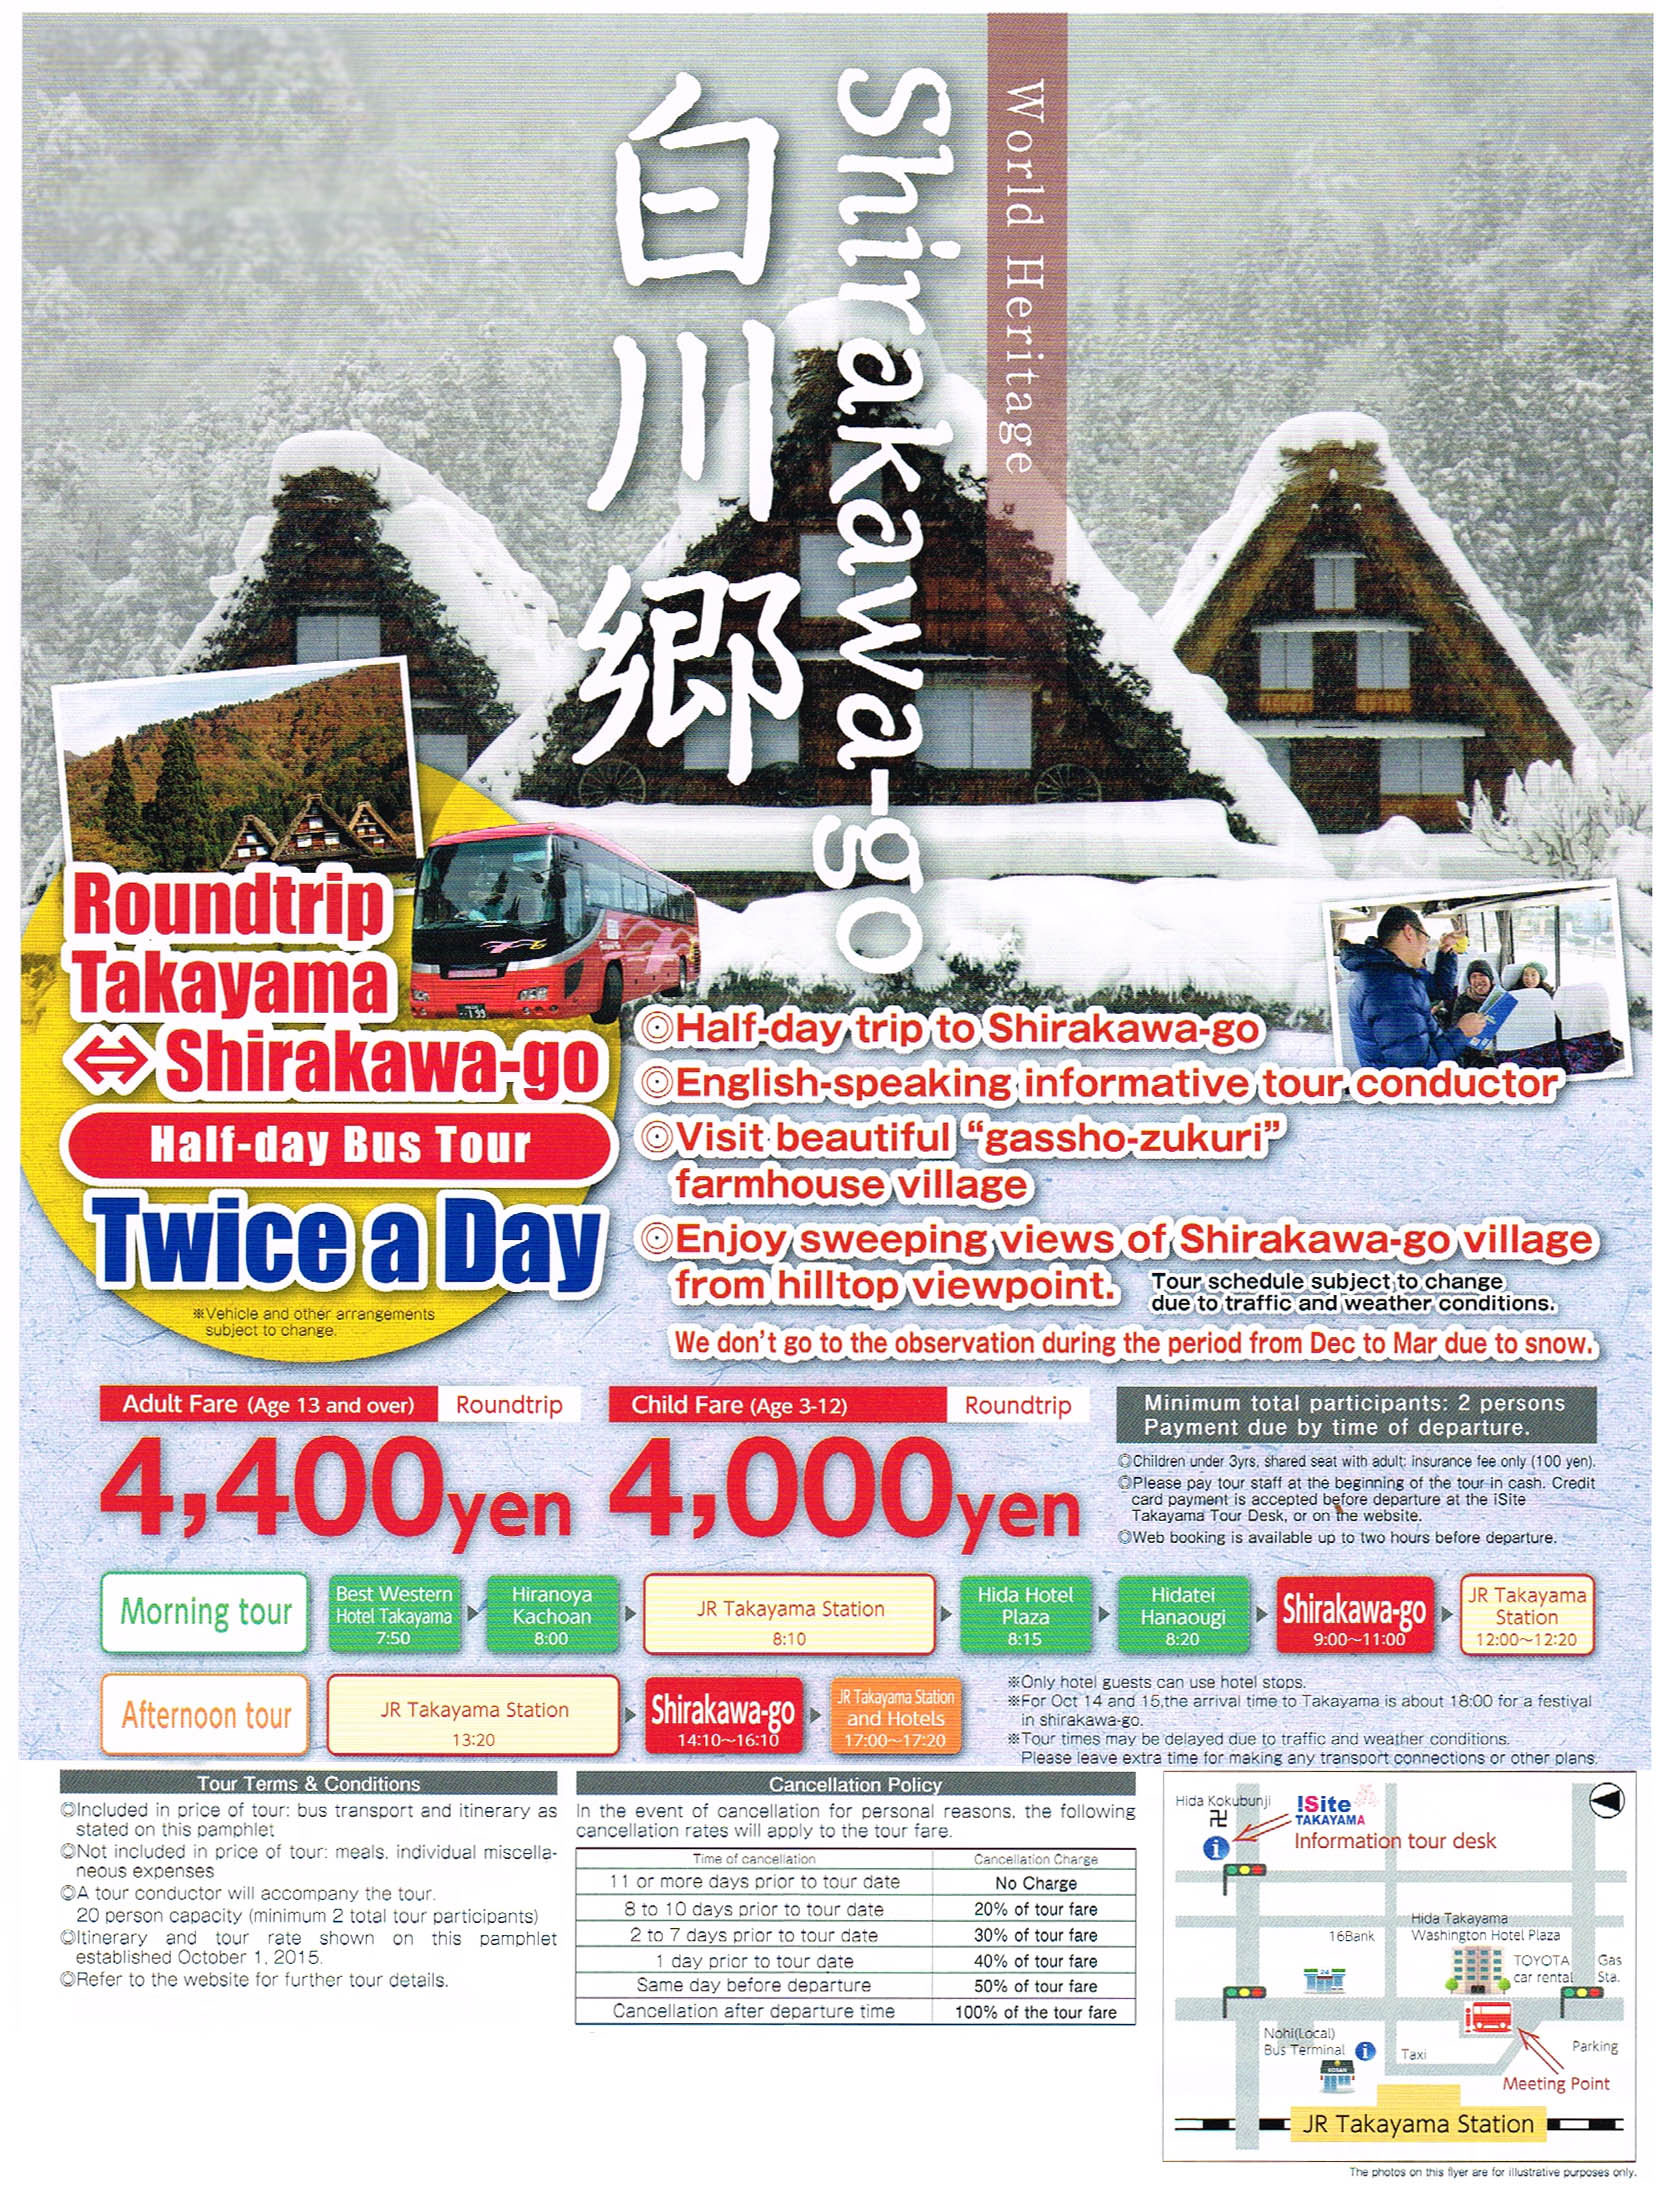 image:Round trip bus tour to Sirakawa-go